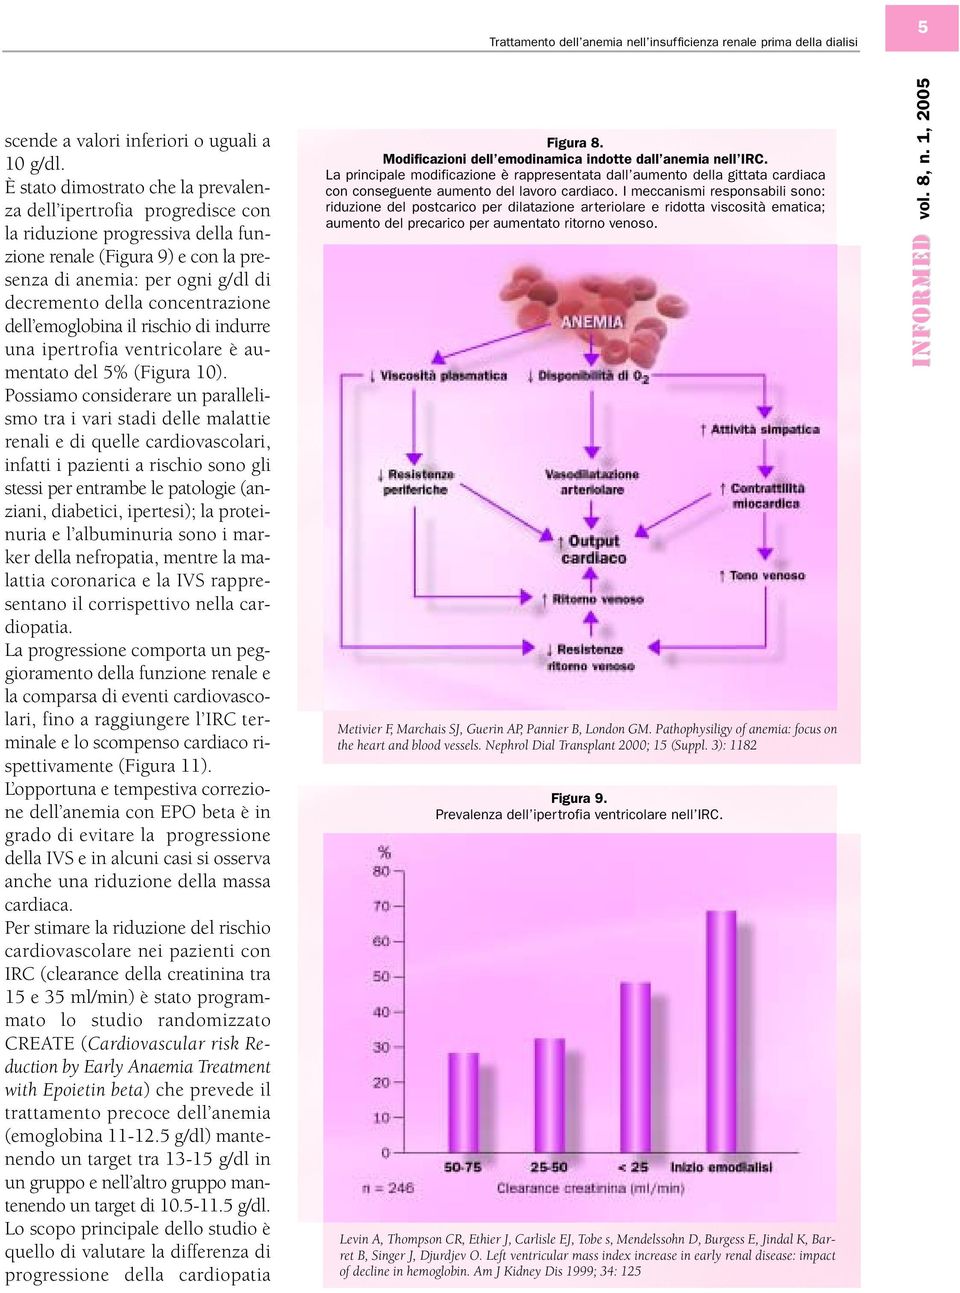 concentrazione dell emoglobina il rischio di indurre una ipertrofia ventricolare è aumentato del 5% (Figura 10).